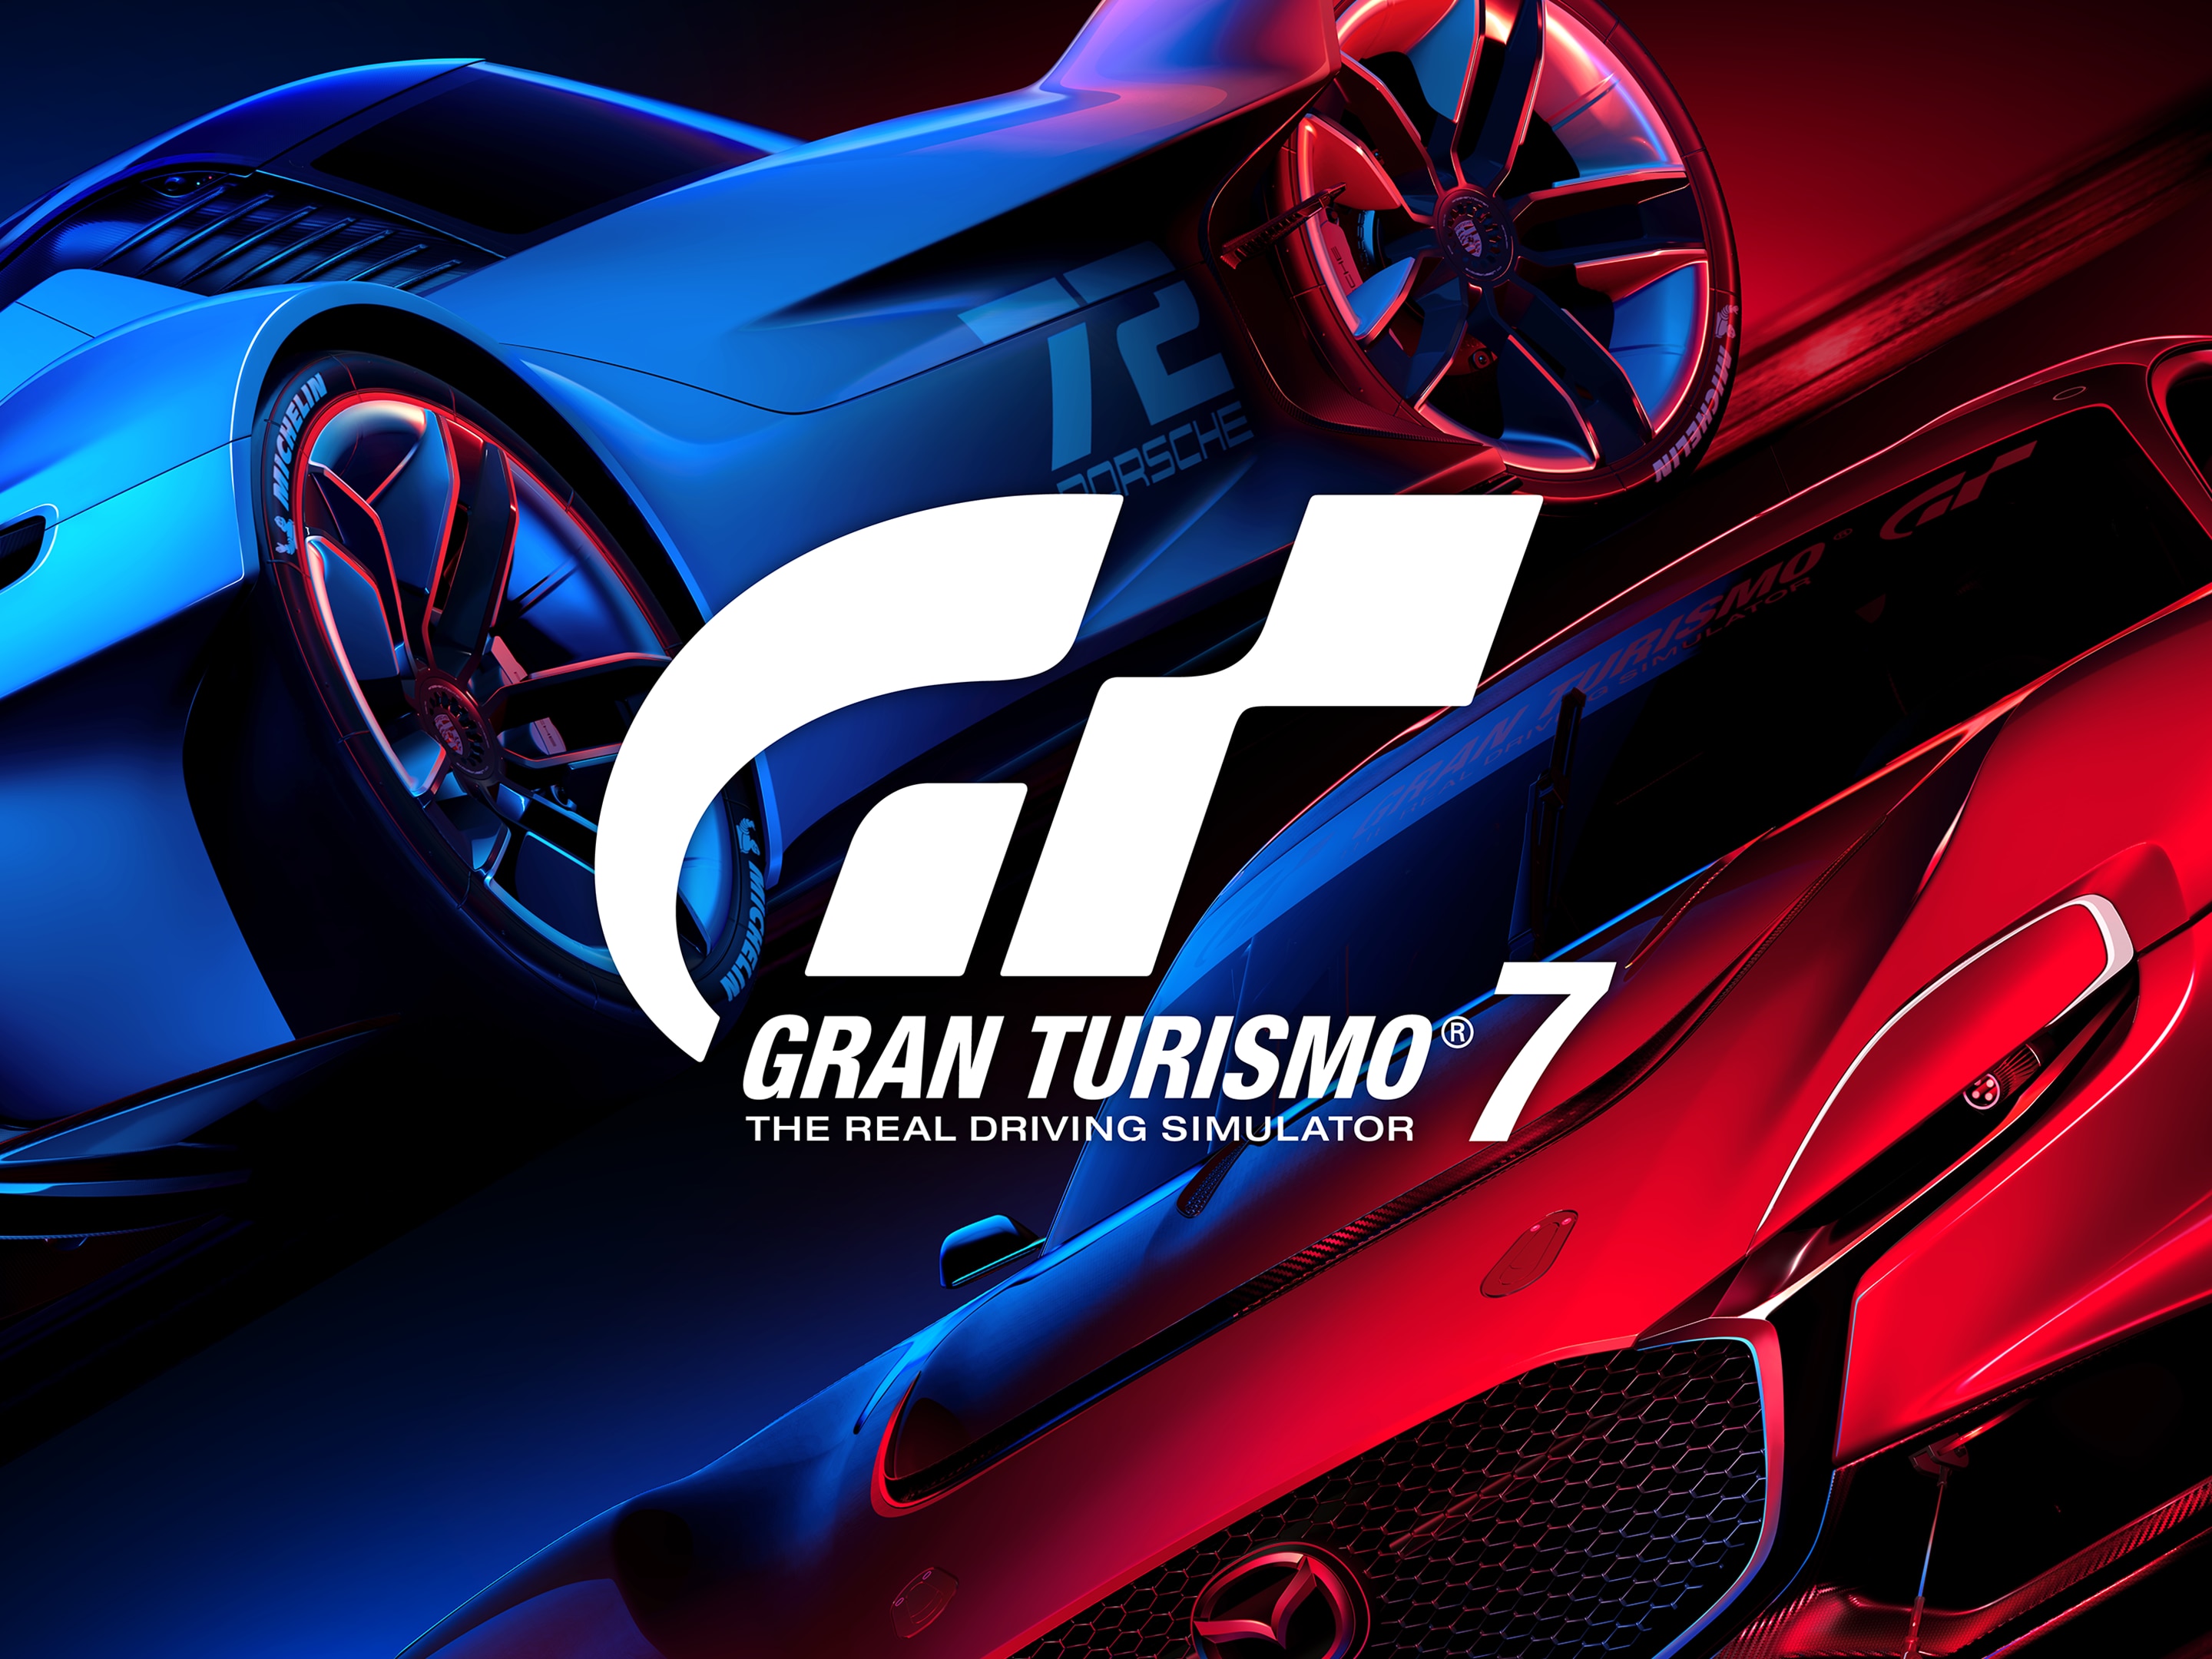 Laden Sie Gran Turismo 7 HD-Desktop-Hintergründe herunter